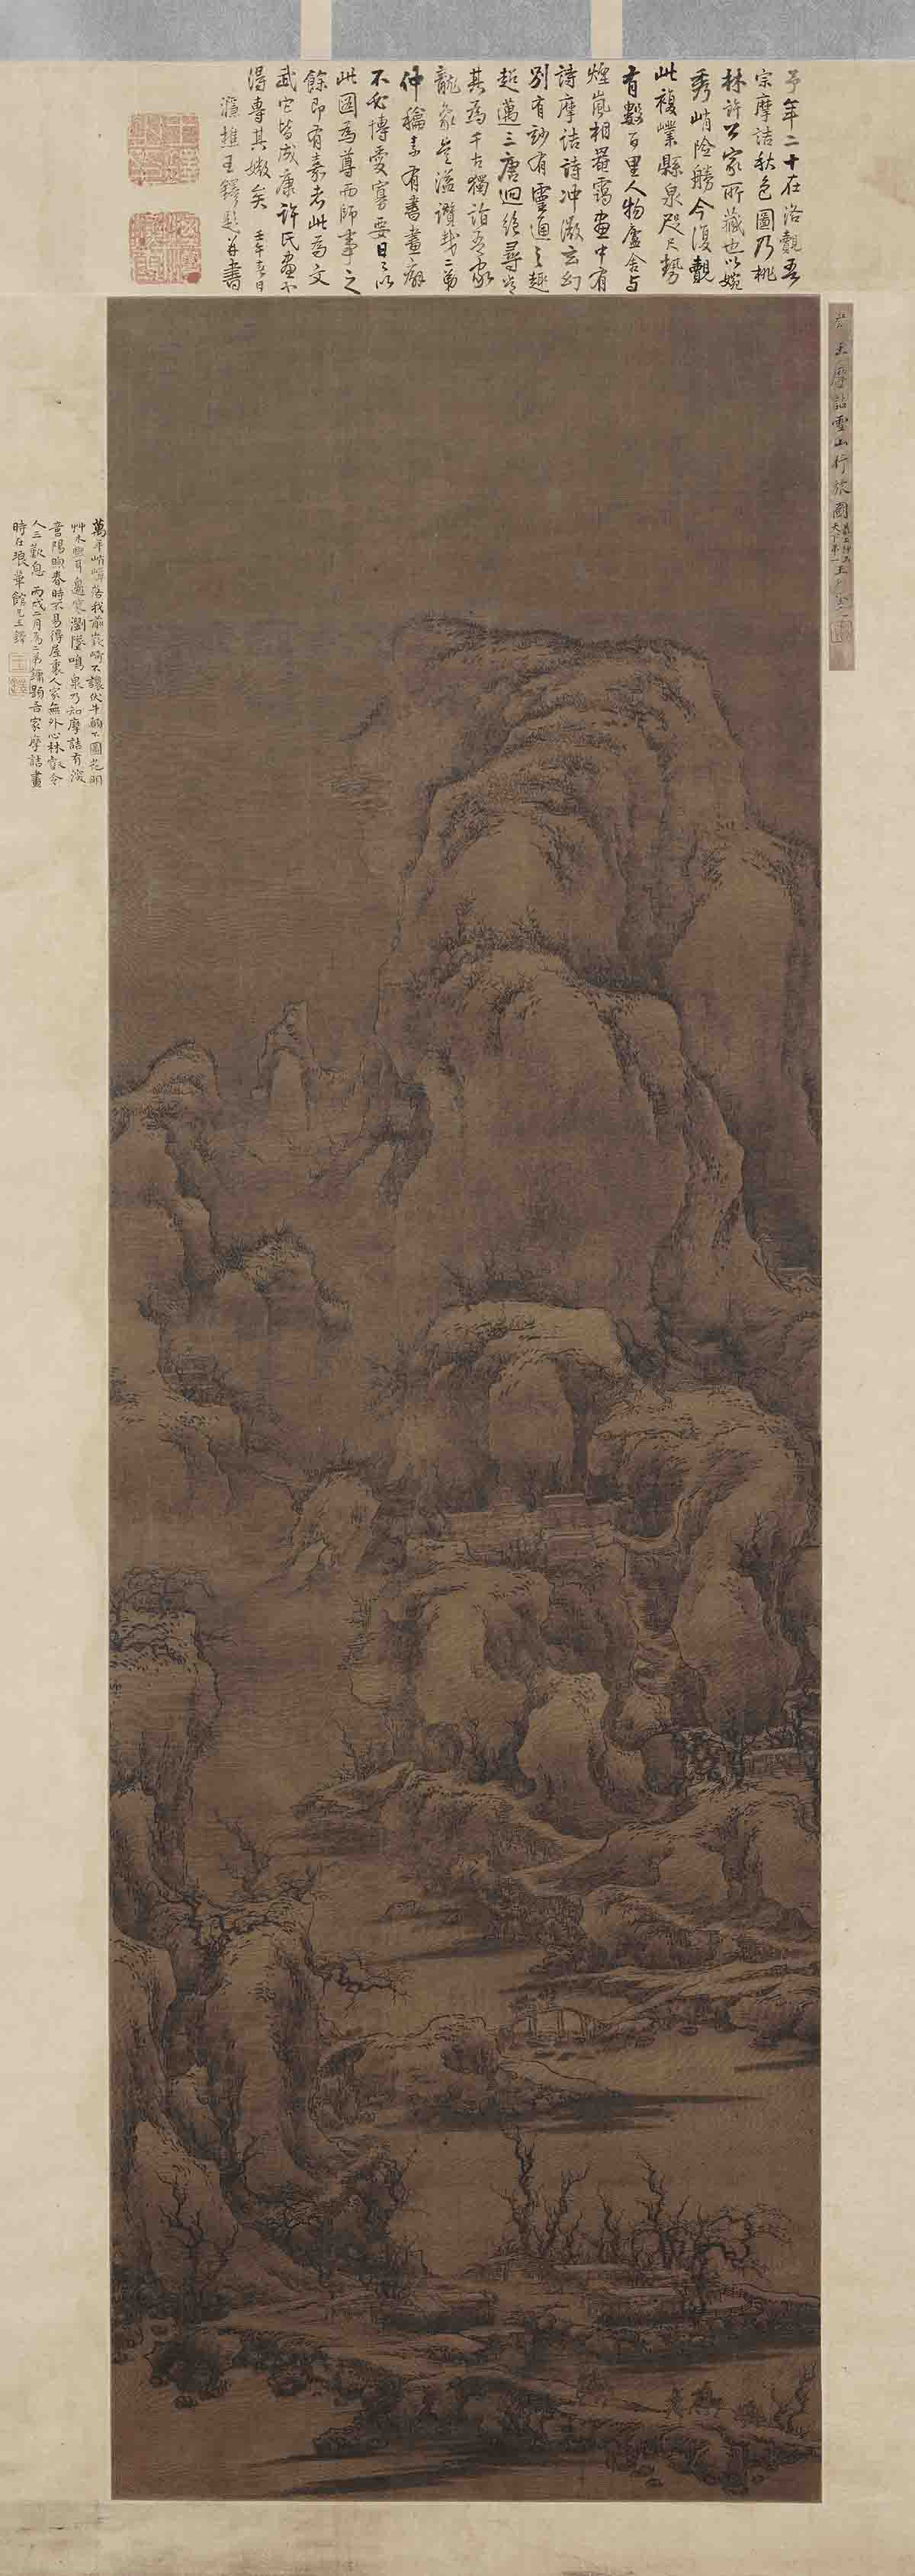 宋 刘松年 雪山行旅图绢本160x99.5四川省博物馆藏